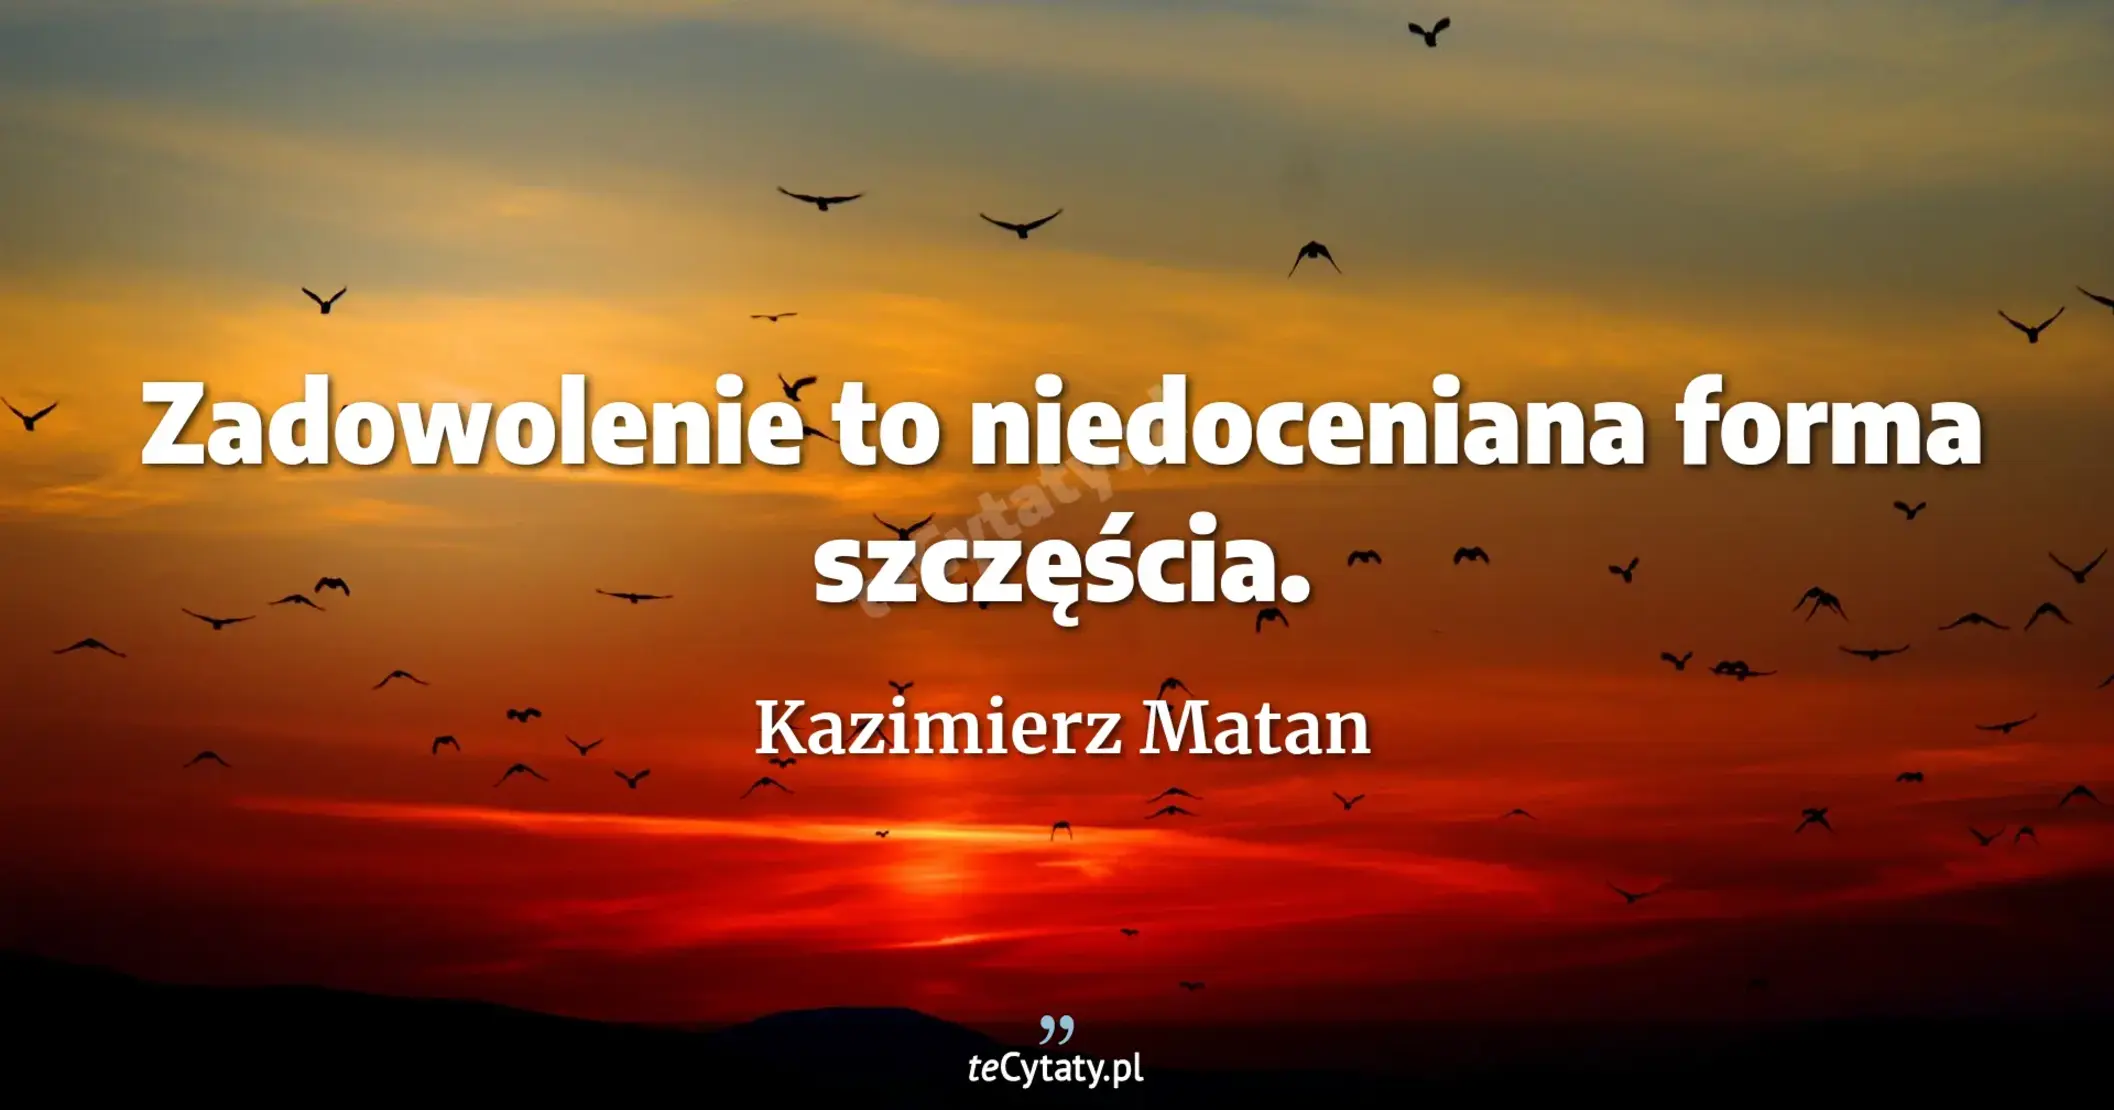 Zadowolenie to niedoceniana forma szczęścia. - Kazimierz Matan